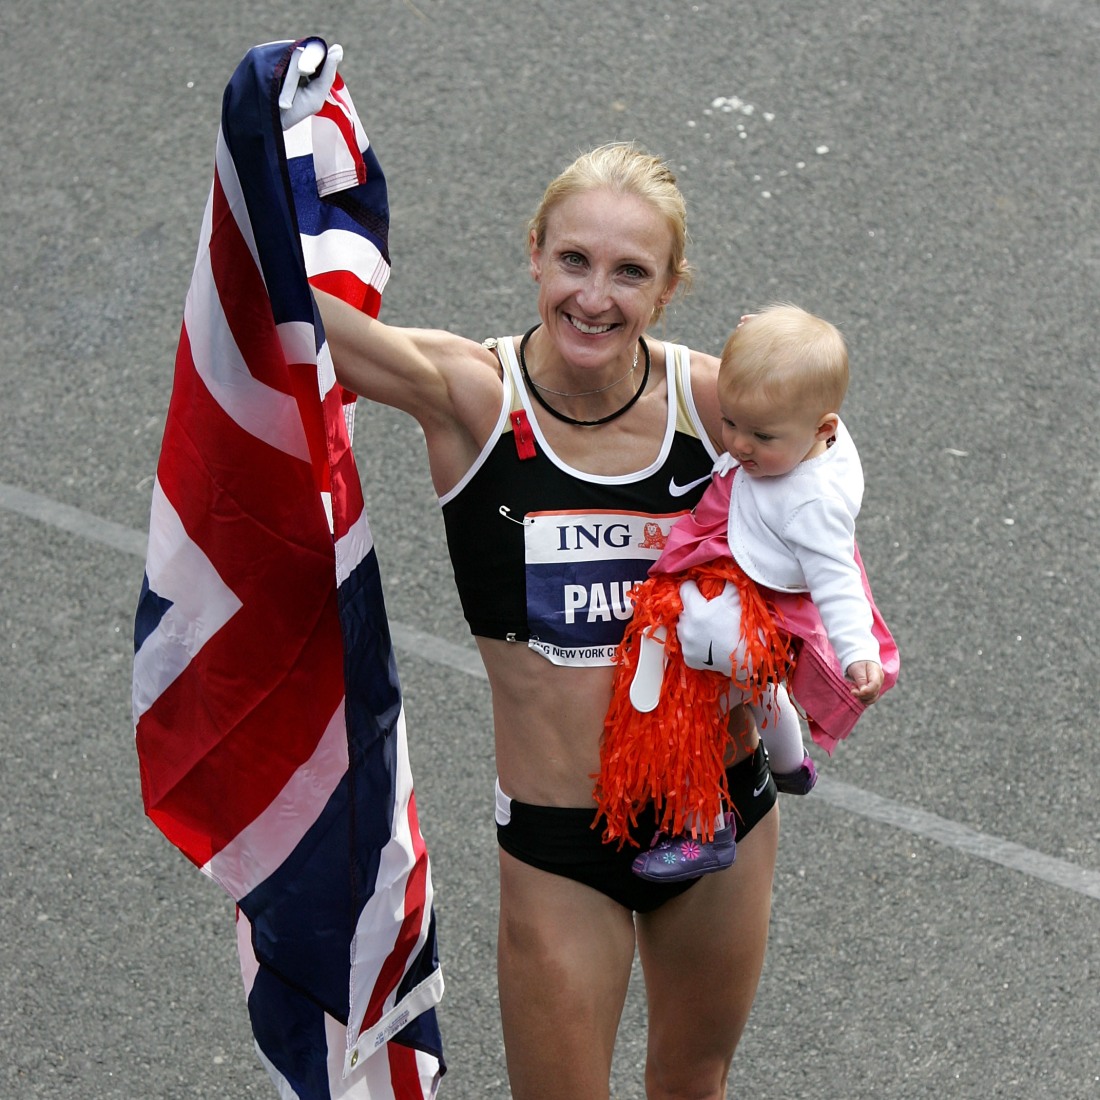 تحتفل باولا رادكليف، وهي تحمل ابنتها إيسلا بذراعها وتحمل العلم البريطاني باليد الأخرى، بعد فوزها بقسم السيدات في ماراثون مدينة نيويورك في 4 نوفمبر 2007.